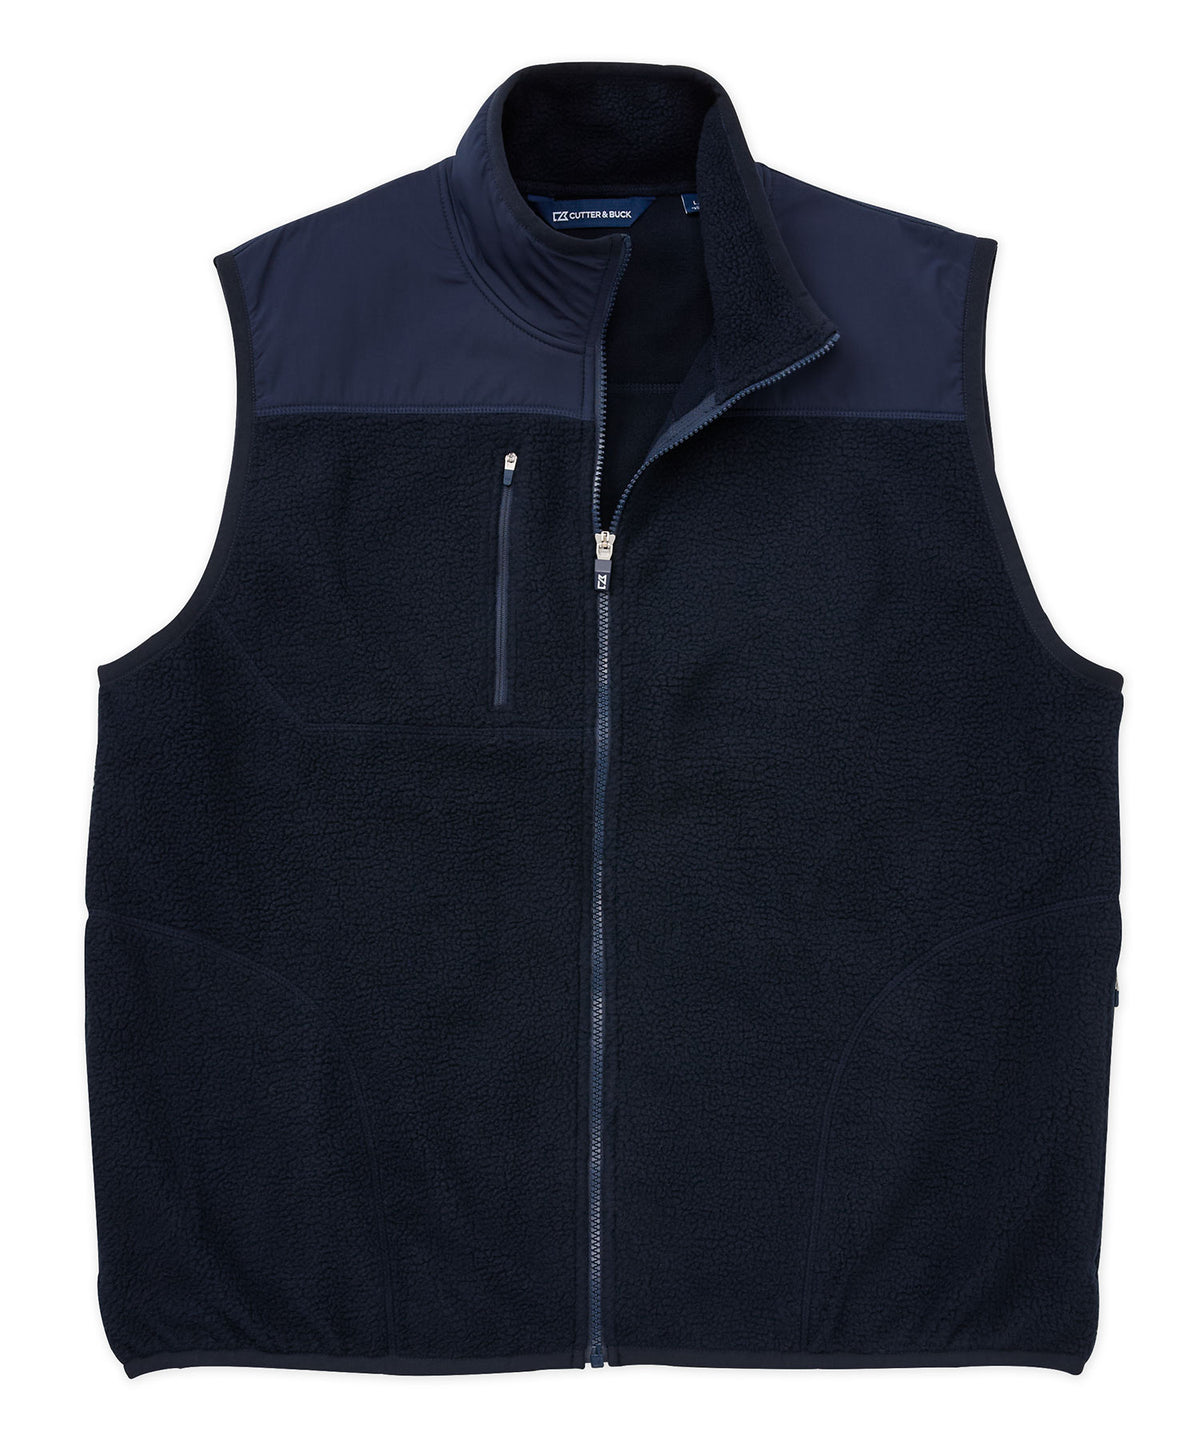 Cutter & Buck Cascade Eco Sherpa Fleece Vest, Big & Tall